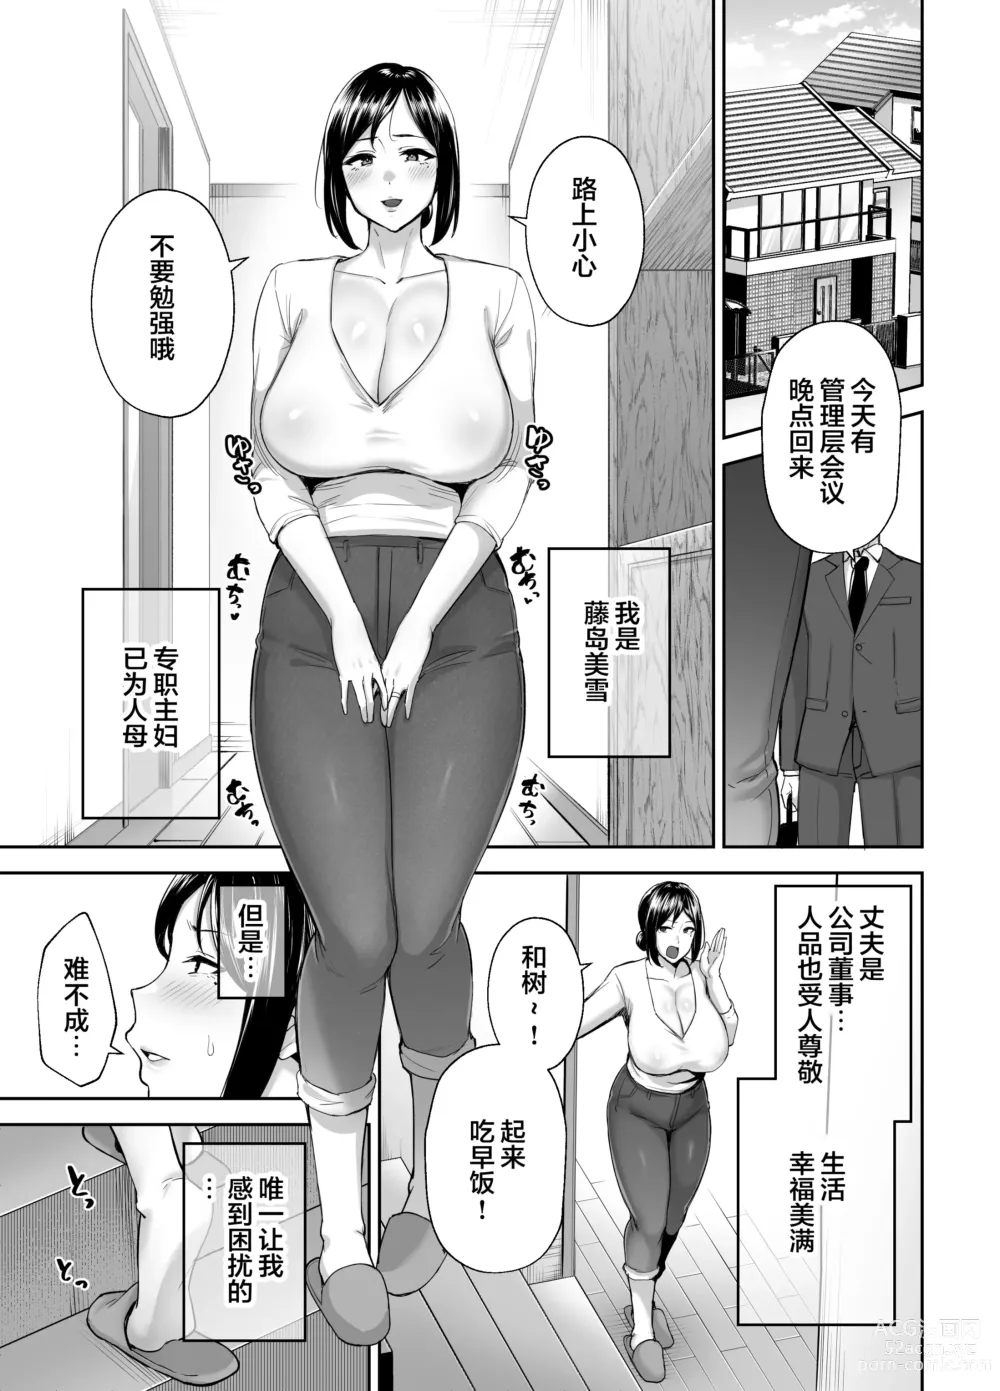 Page 3 of manga [Golden Bazooka (Gagarin Yoshi) Ichiban Mimoto de Eroi Mesuki ~ Haha Dakedo, Shiko Saru Musuko ni Komatteimasu]